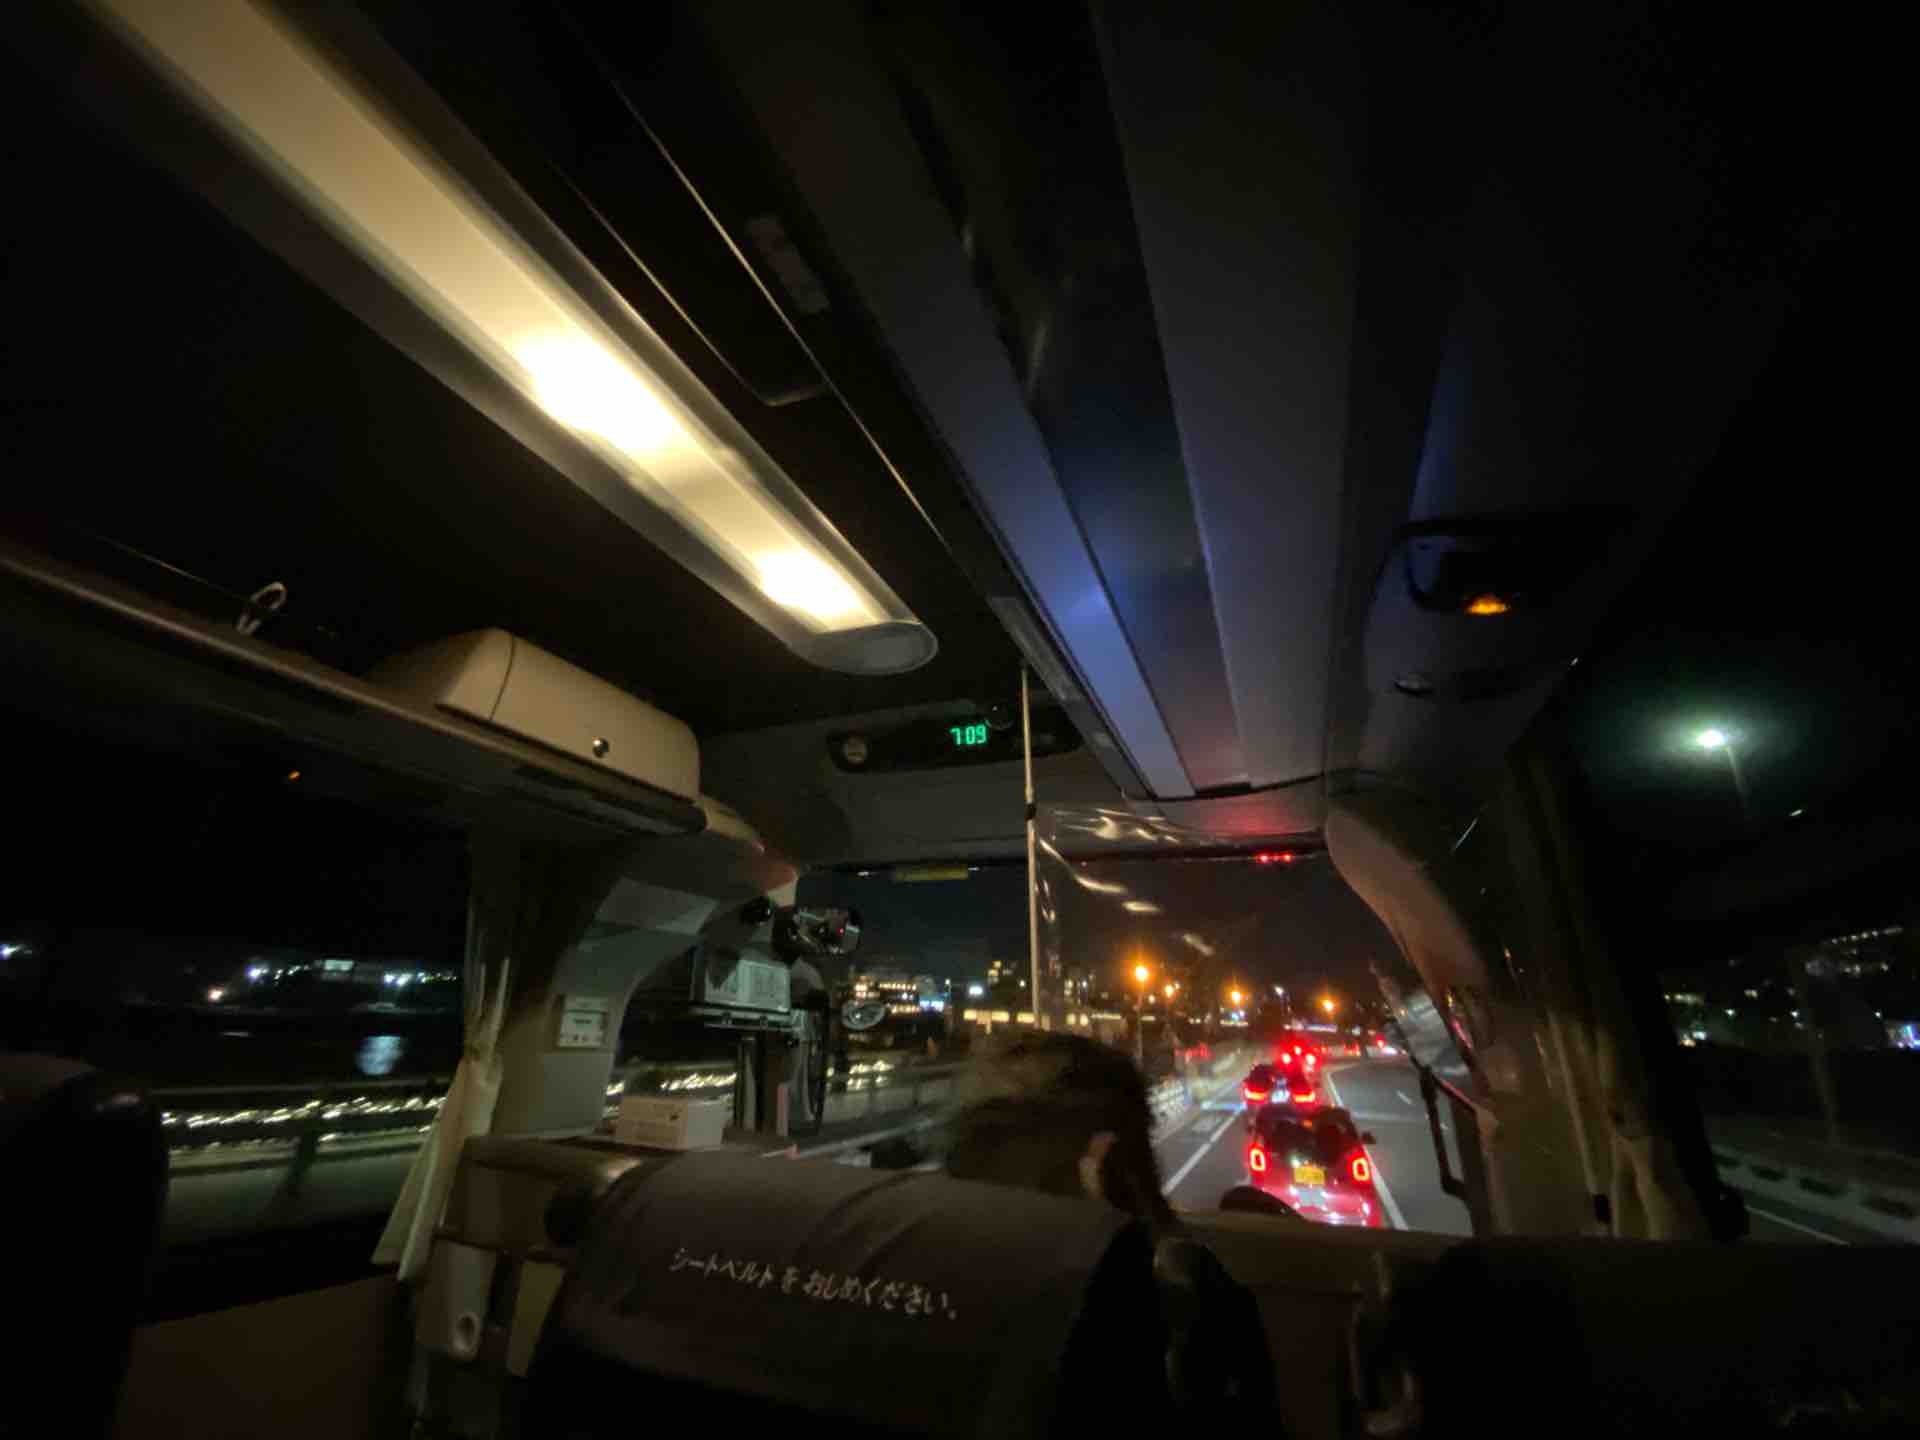 江ノ電バス R134bus実験運行レポート 江の島から鎌倉へ 休日自衛隊ライブドア基地 Jhsdf Livedoor Base